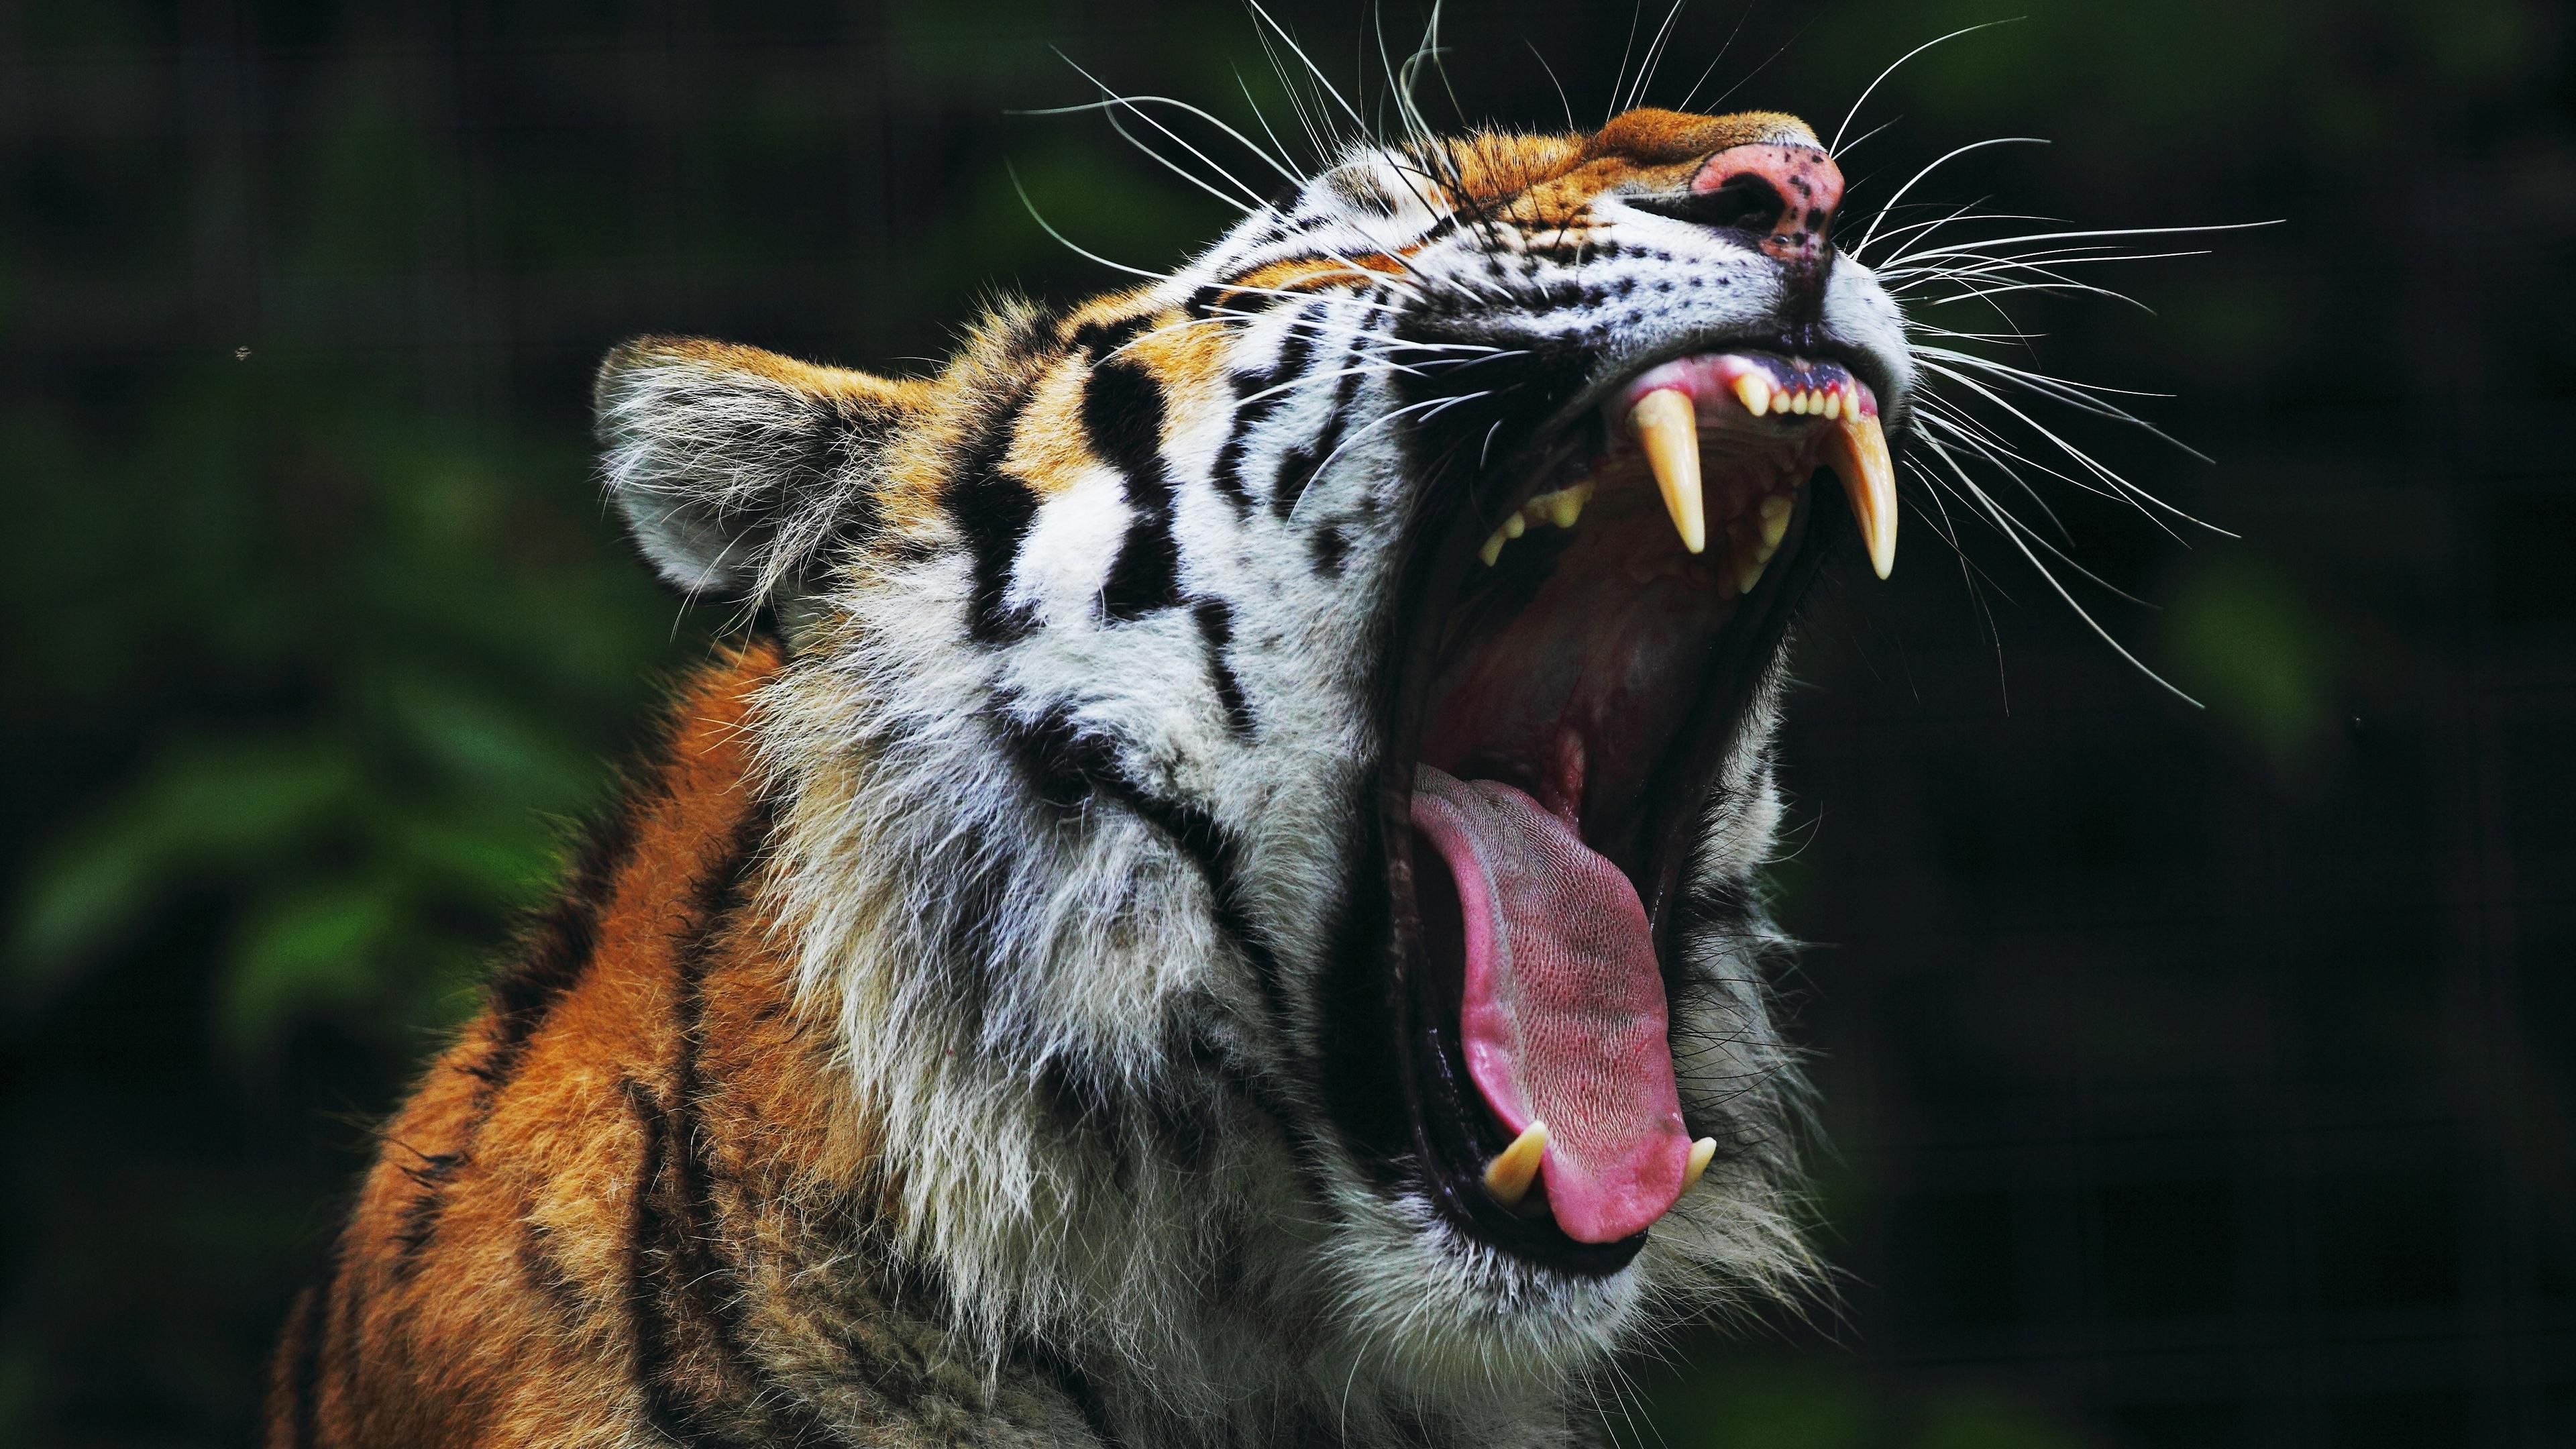 Tiger roaring, Tiger wallpaper .com